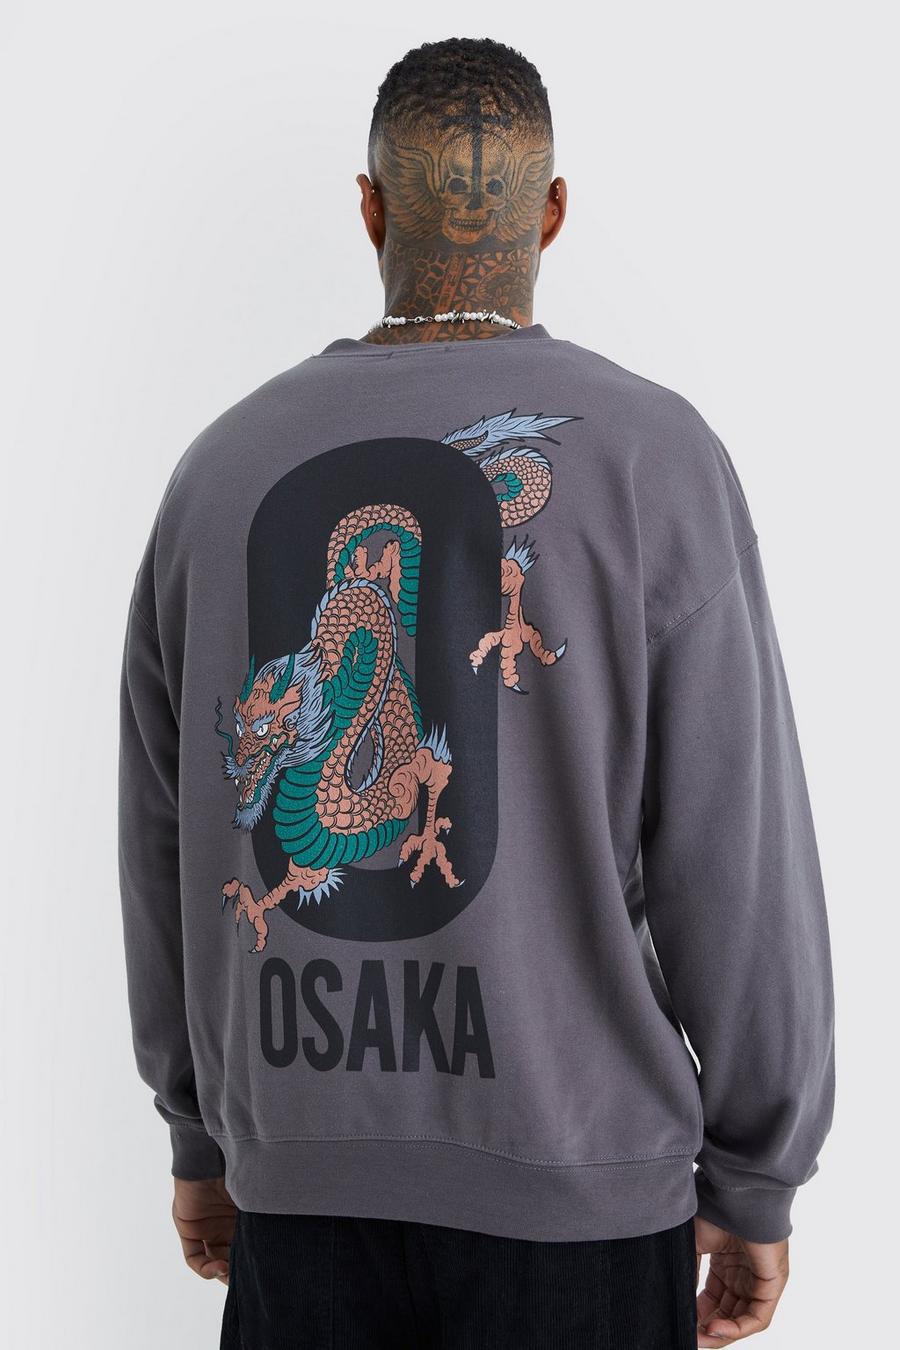 Charcoal grey Oversized Osaka Graphic Sweatshirt